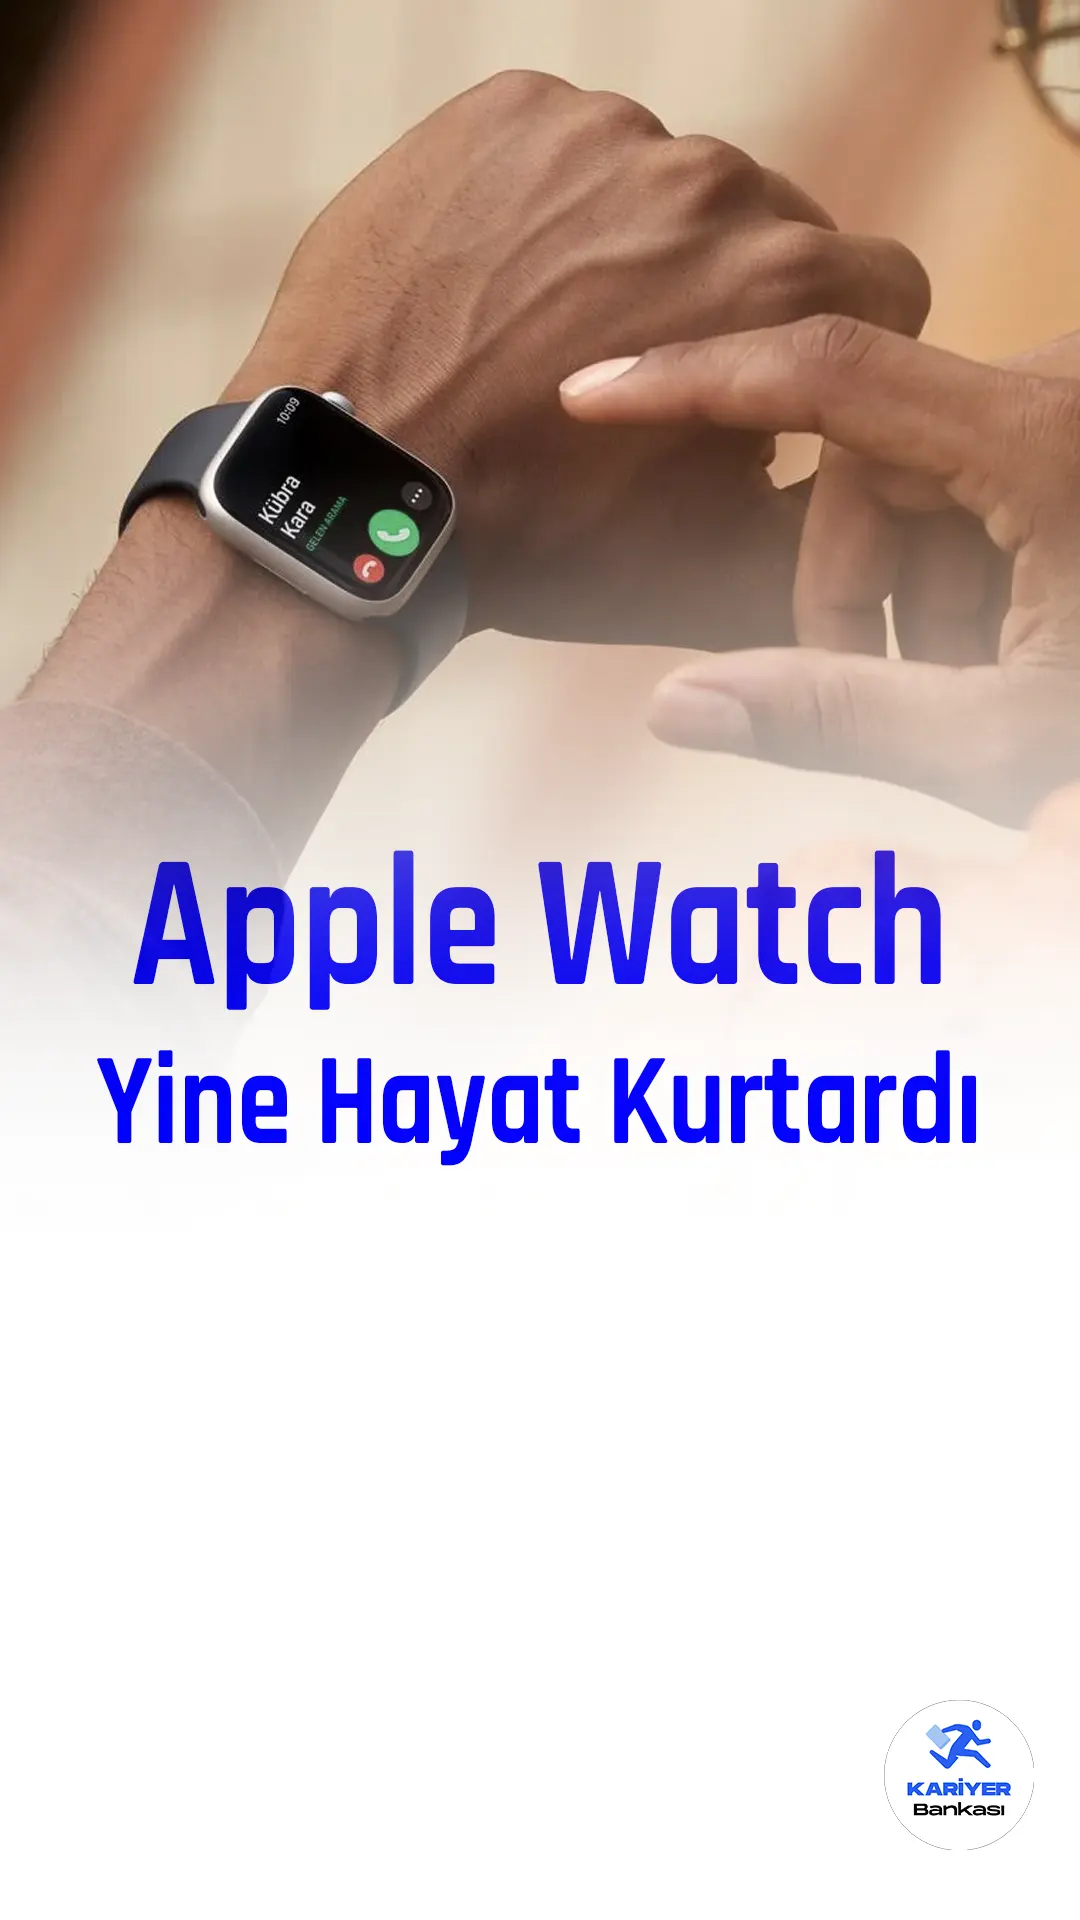 Apple Watch Series, bir hayat kurtarma haberiyle gündeme geldi.